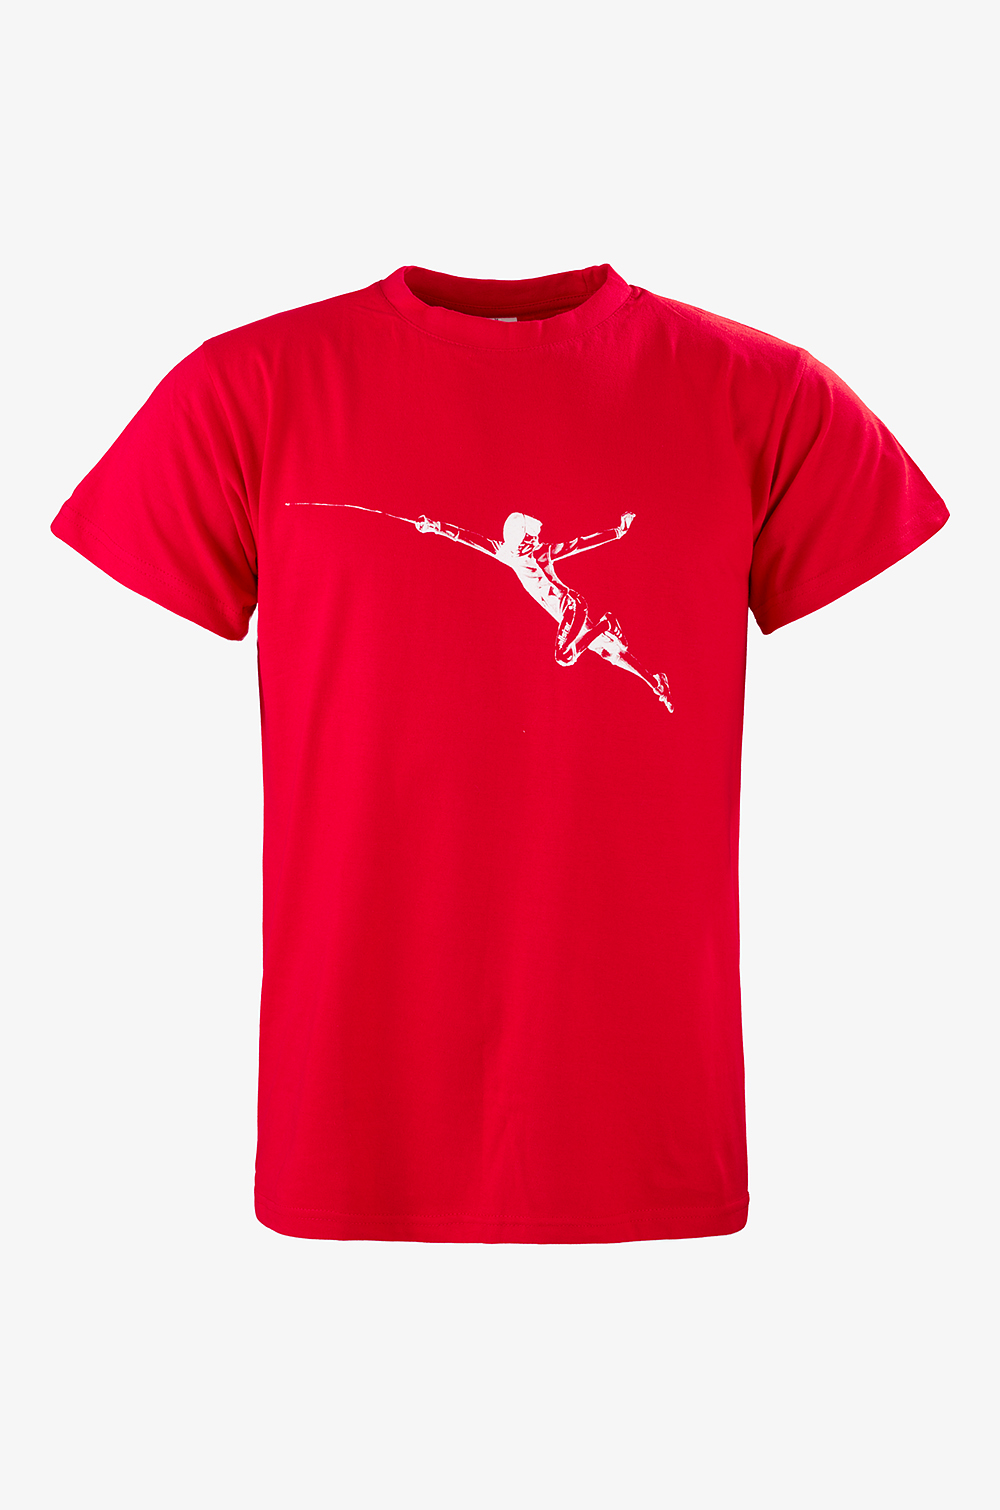 allstar T-shirt Fliegender Fechter